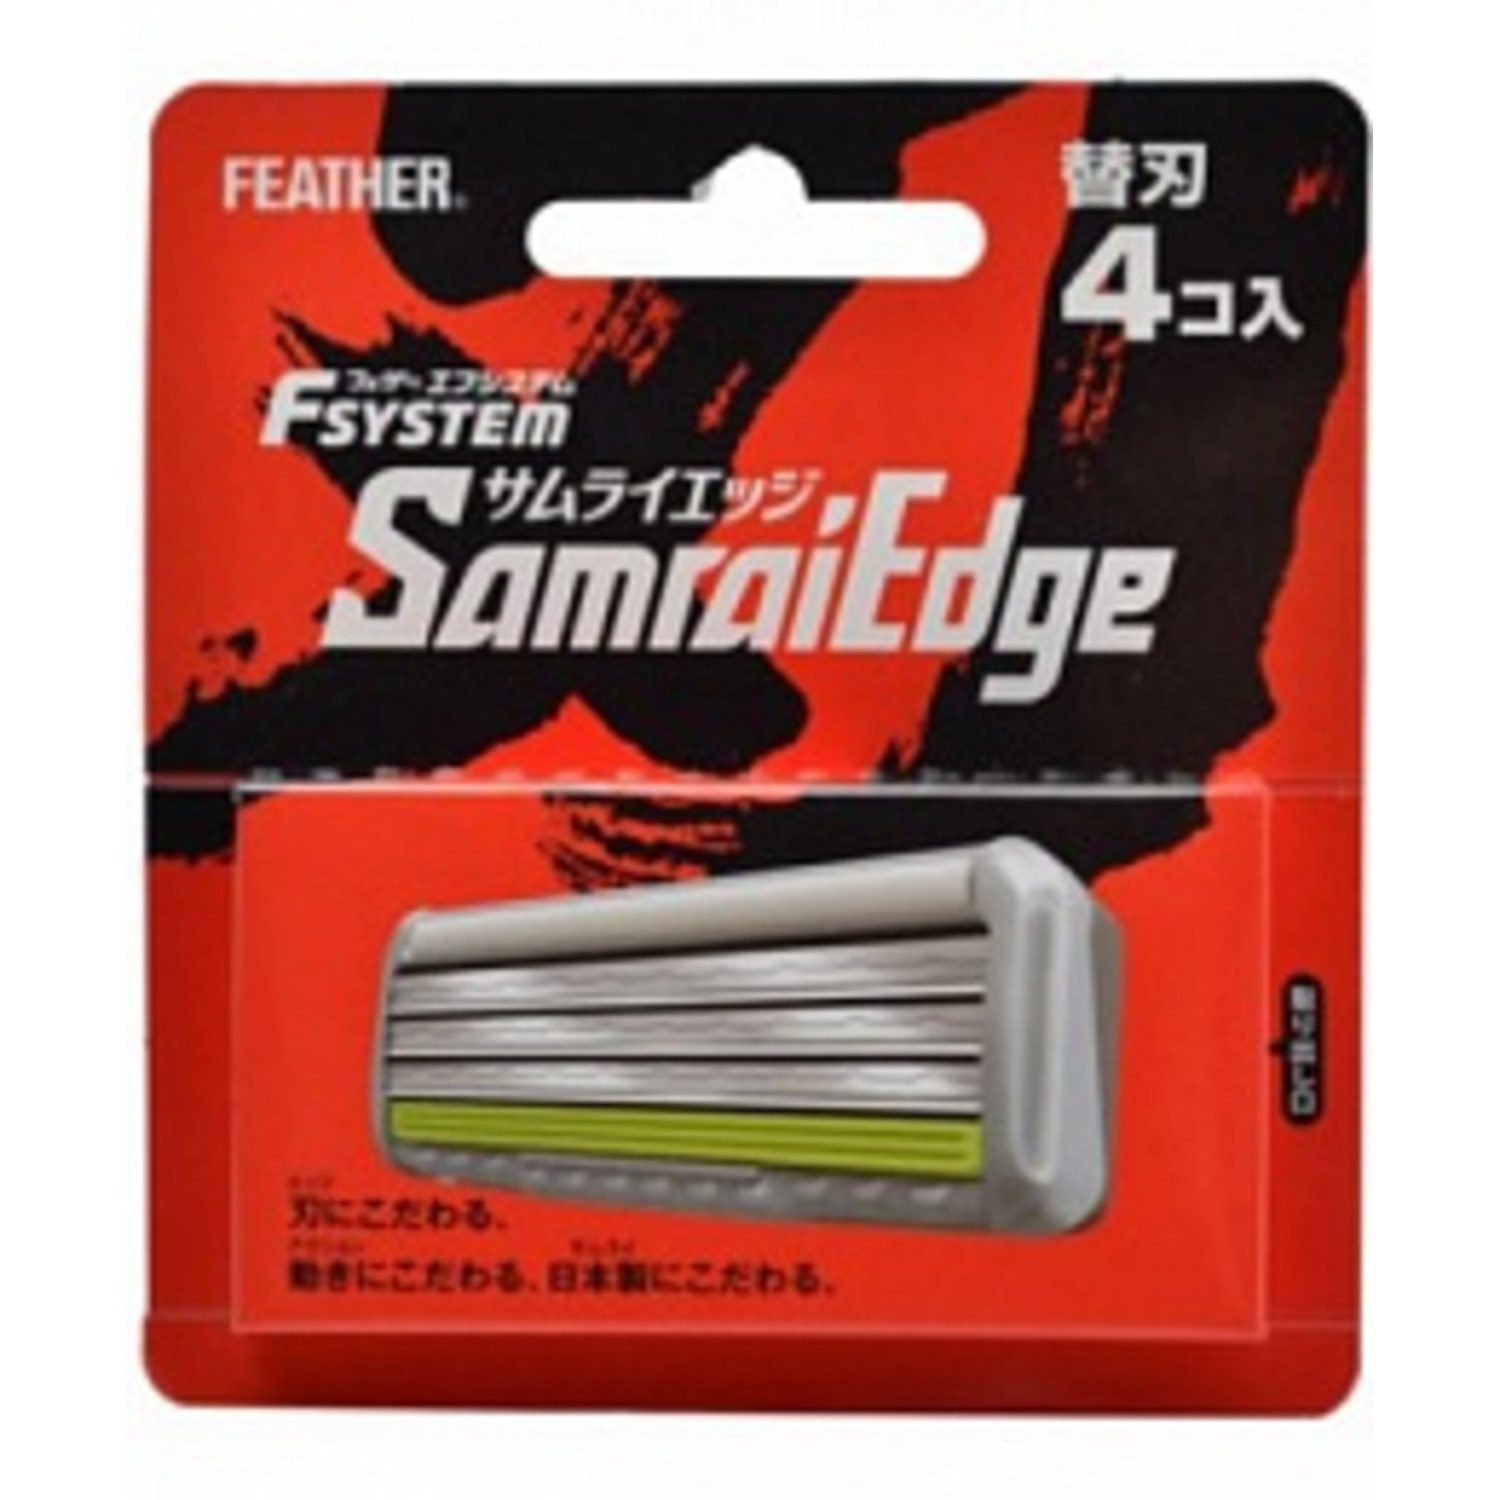 Feather F-System "Samurai Edge" Запасные кассеты с тройным лезвием для станка  4шт